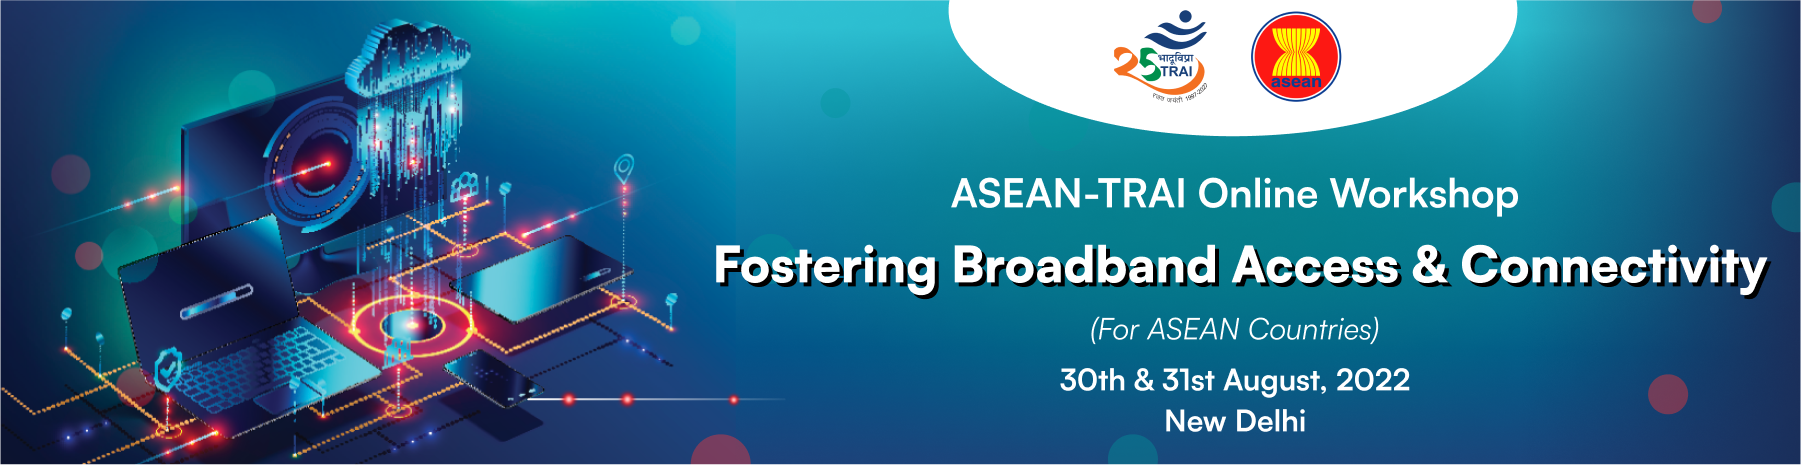 ASEAN-TRAI Banner